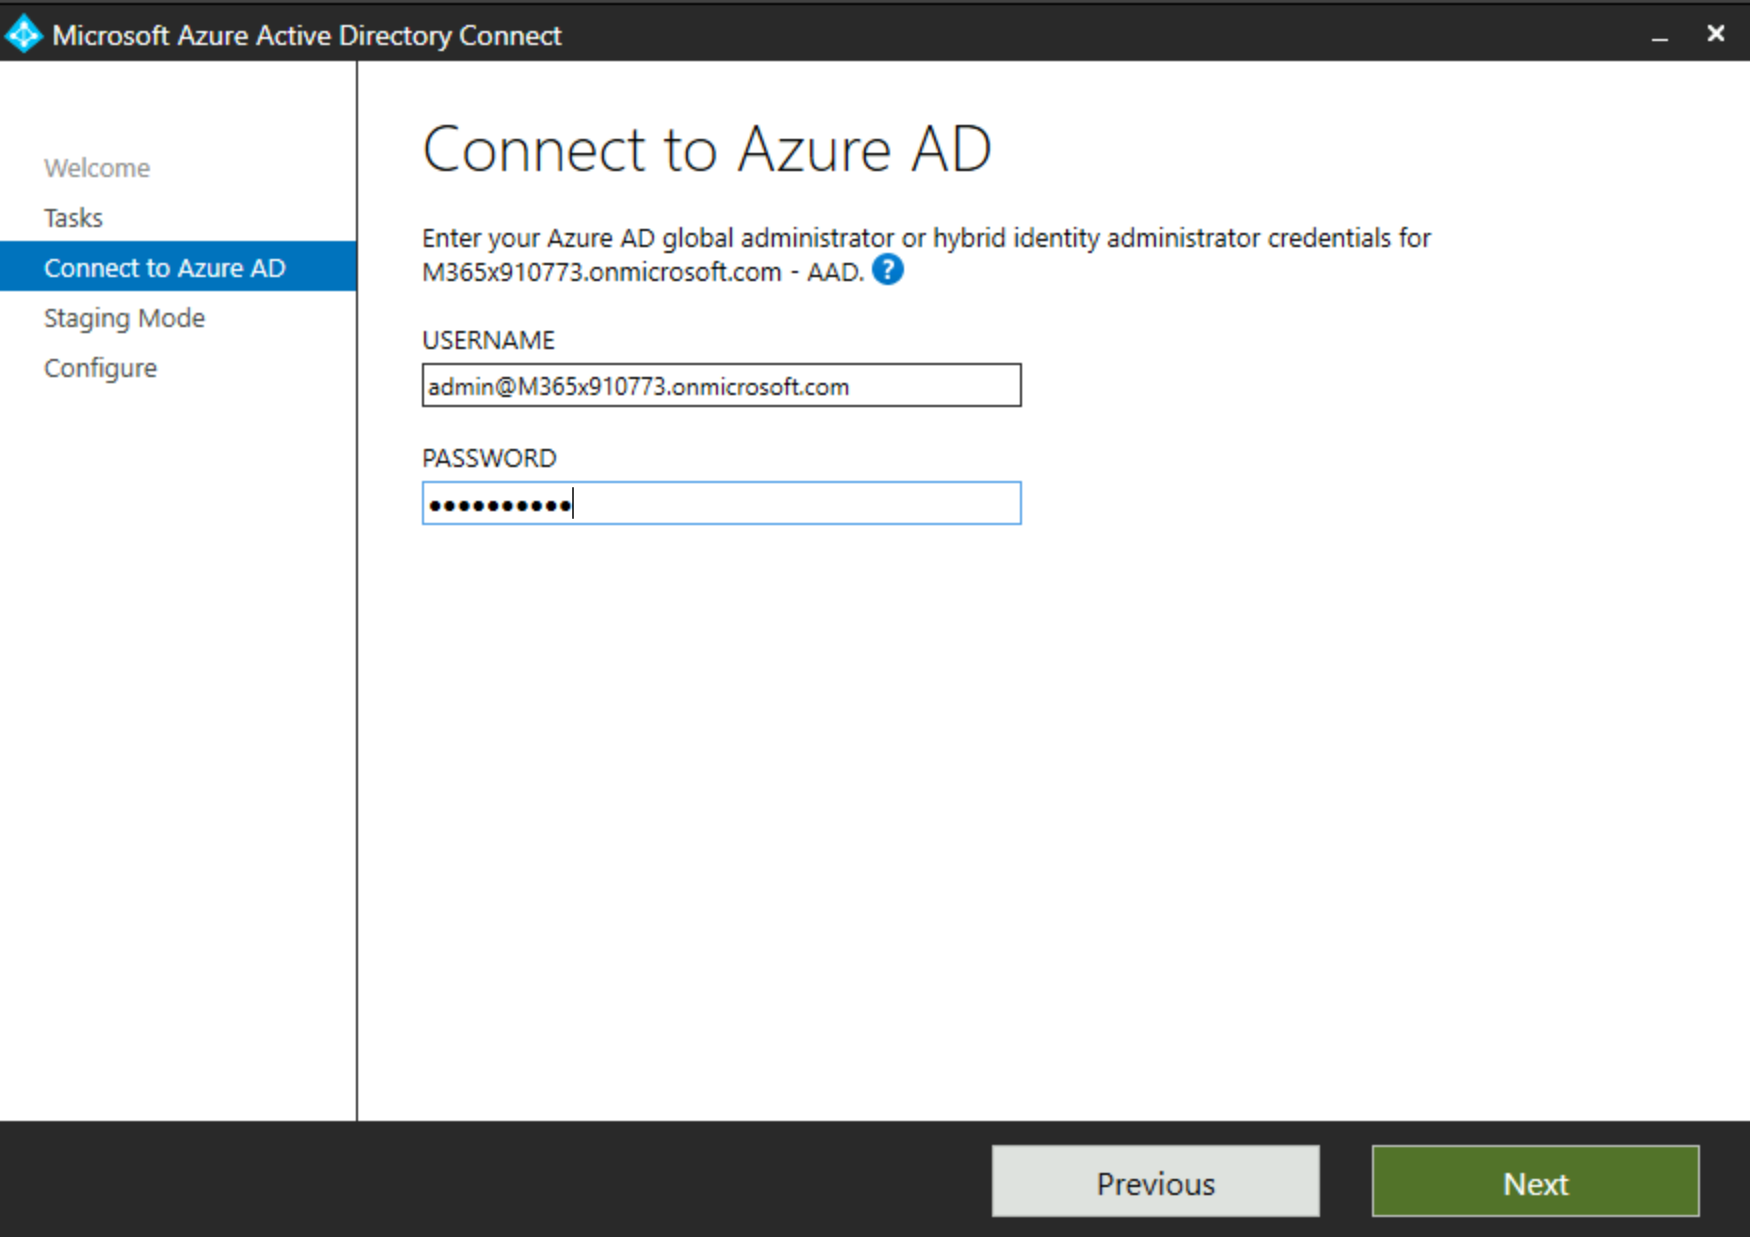 屏幕截图显示主动 Azure AD Connect 对话框中的登录提示。